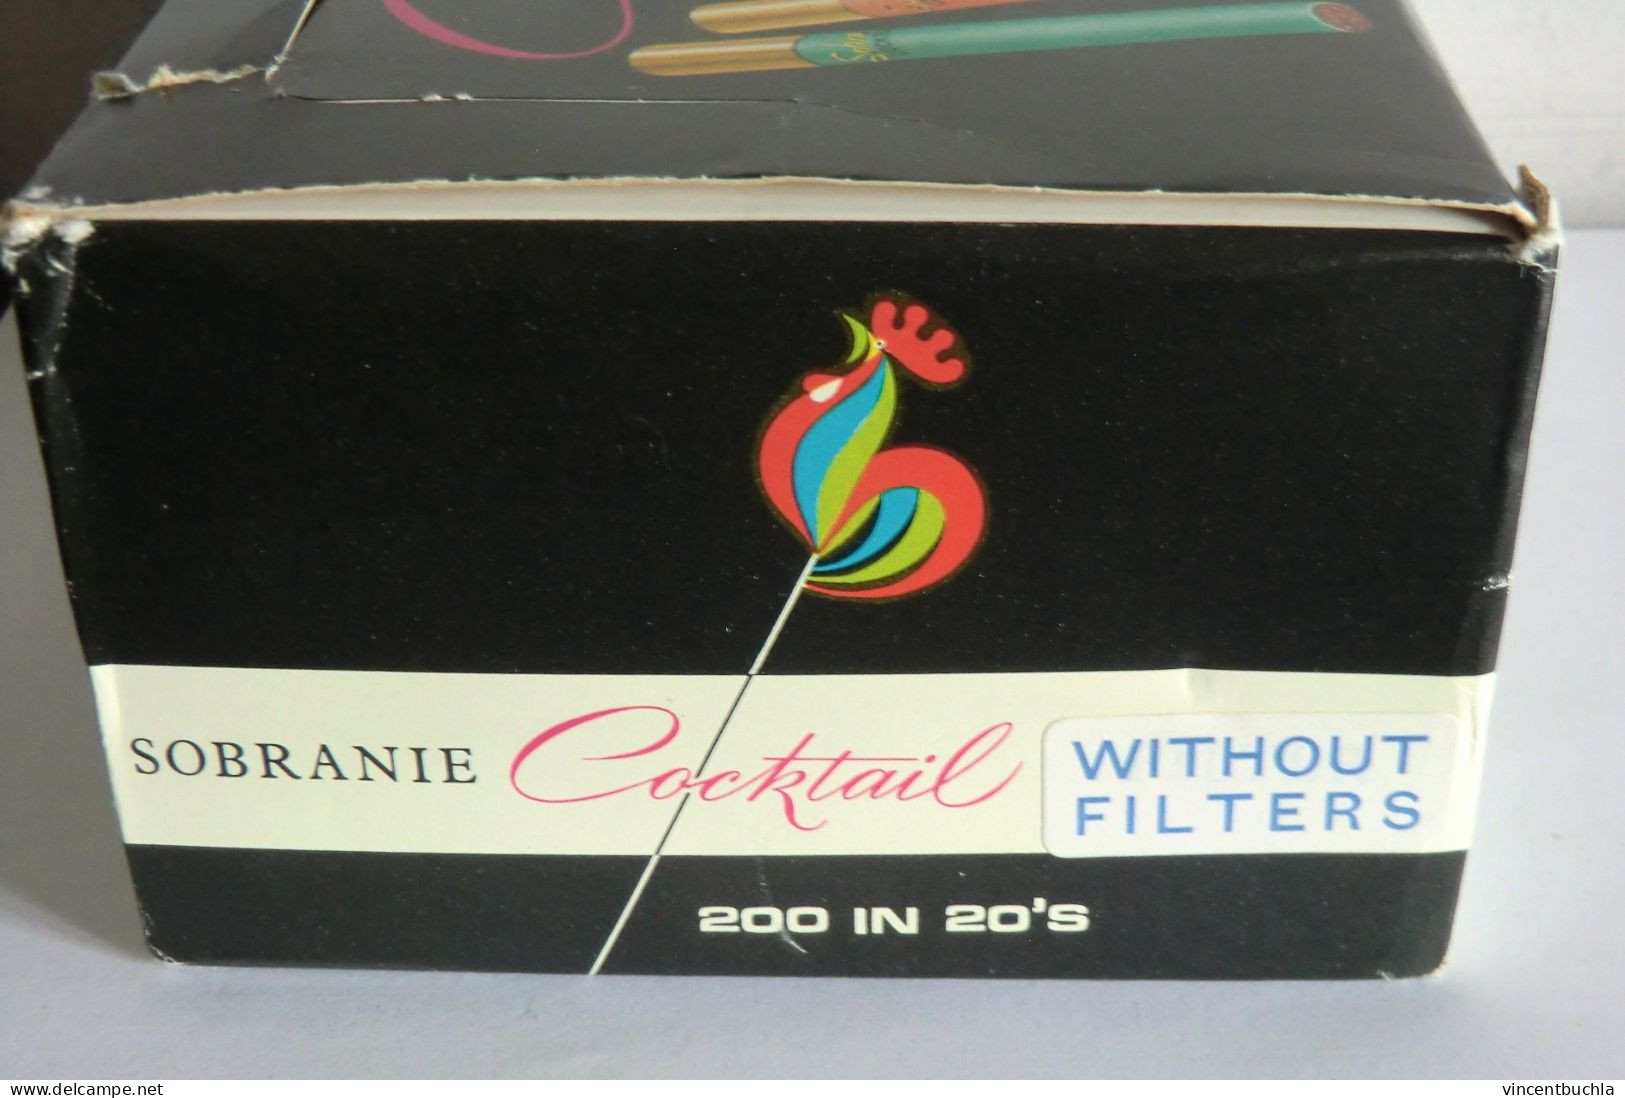 Boite présentoir cigarette anciennes Sobranie Coctail 5 couleurs 5 Colours avec 10 paquets celophanés Made in england